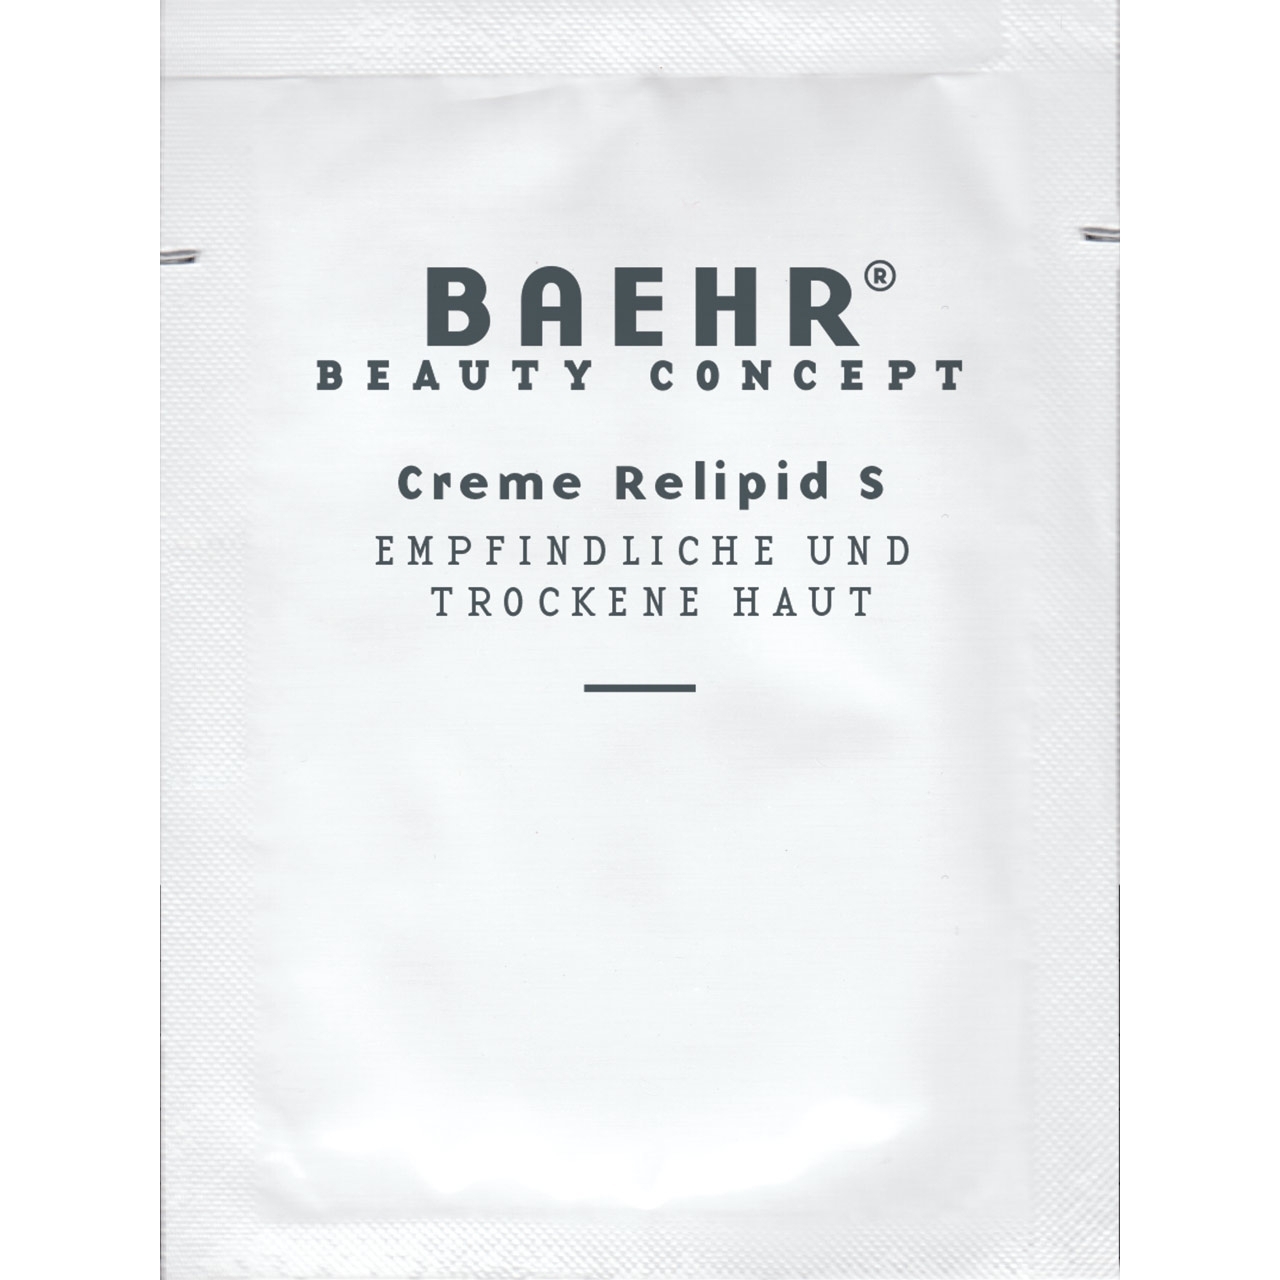 BAEHR BEAUTY CONCEPT - Creme relipid S, Probe, 1 Stk.